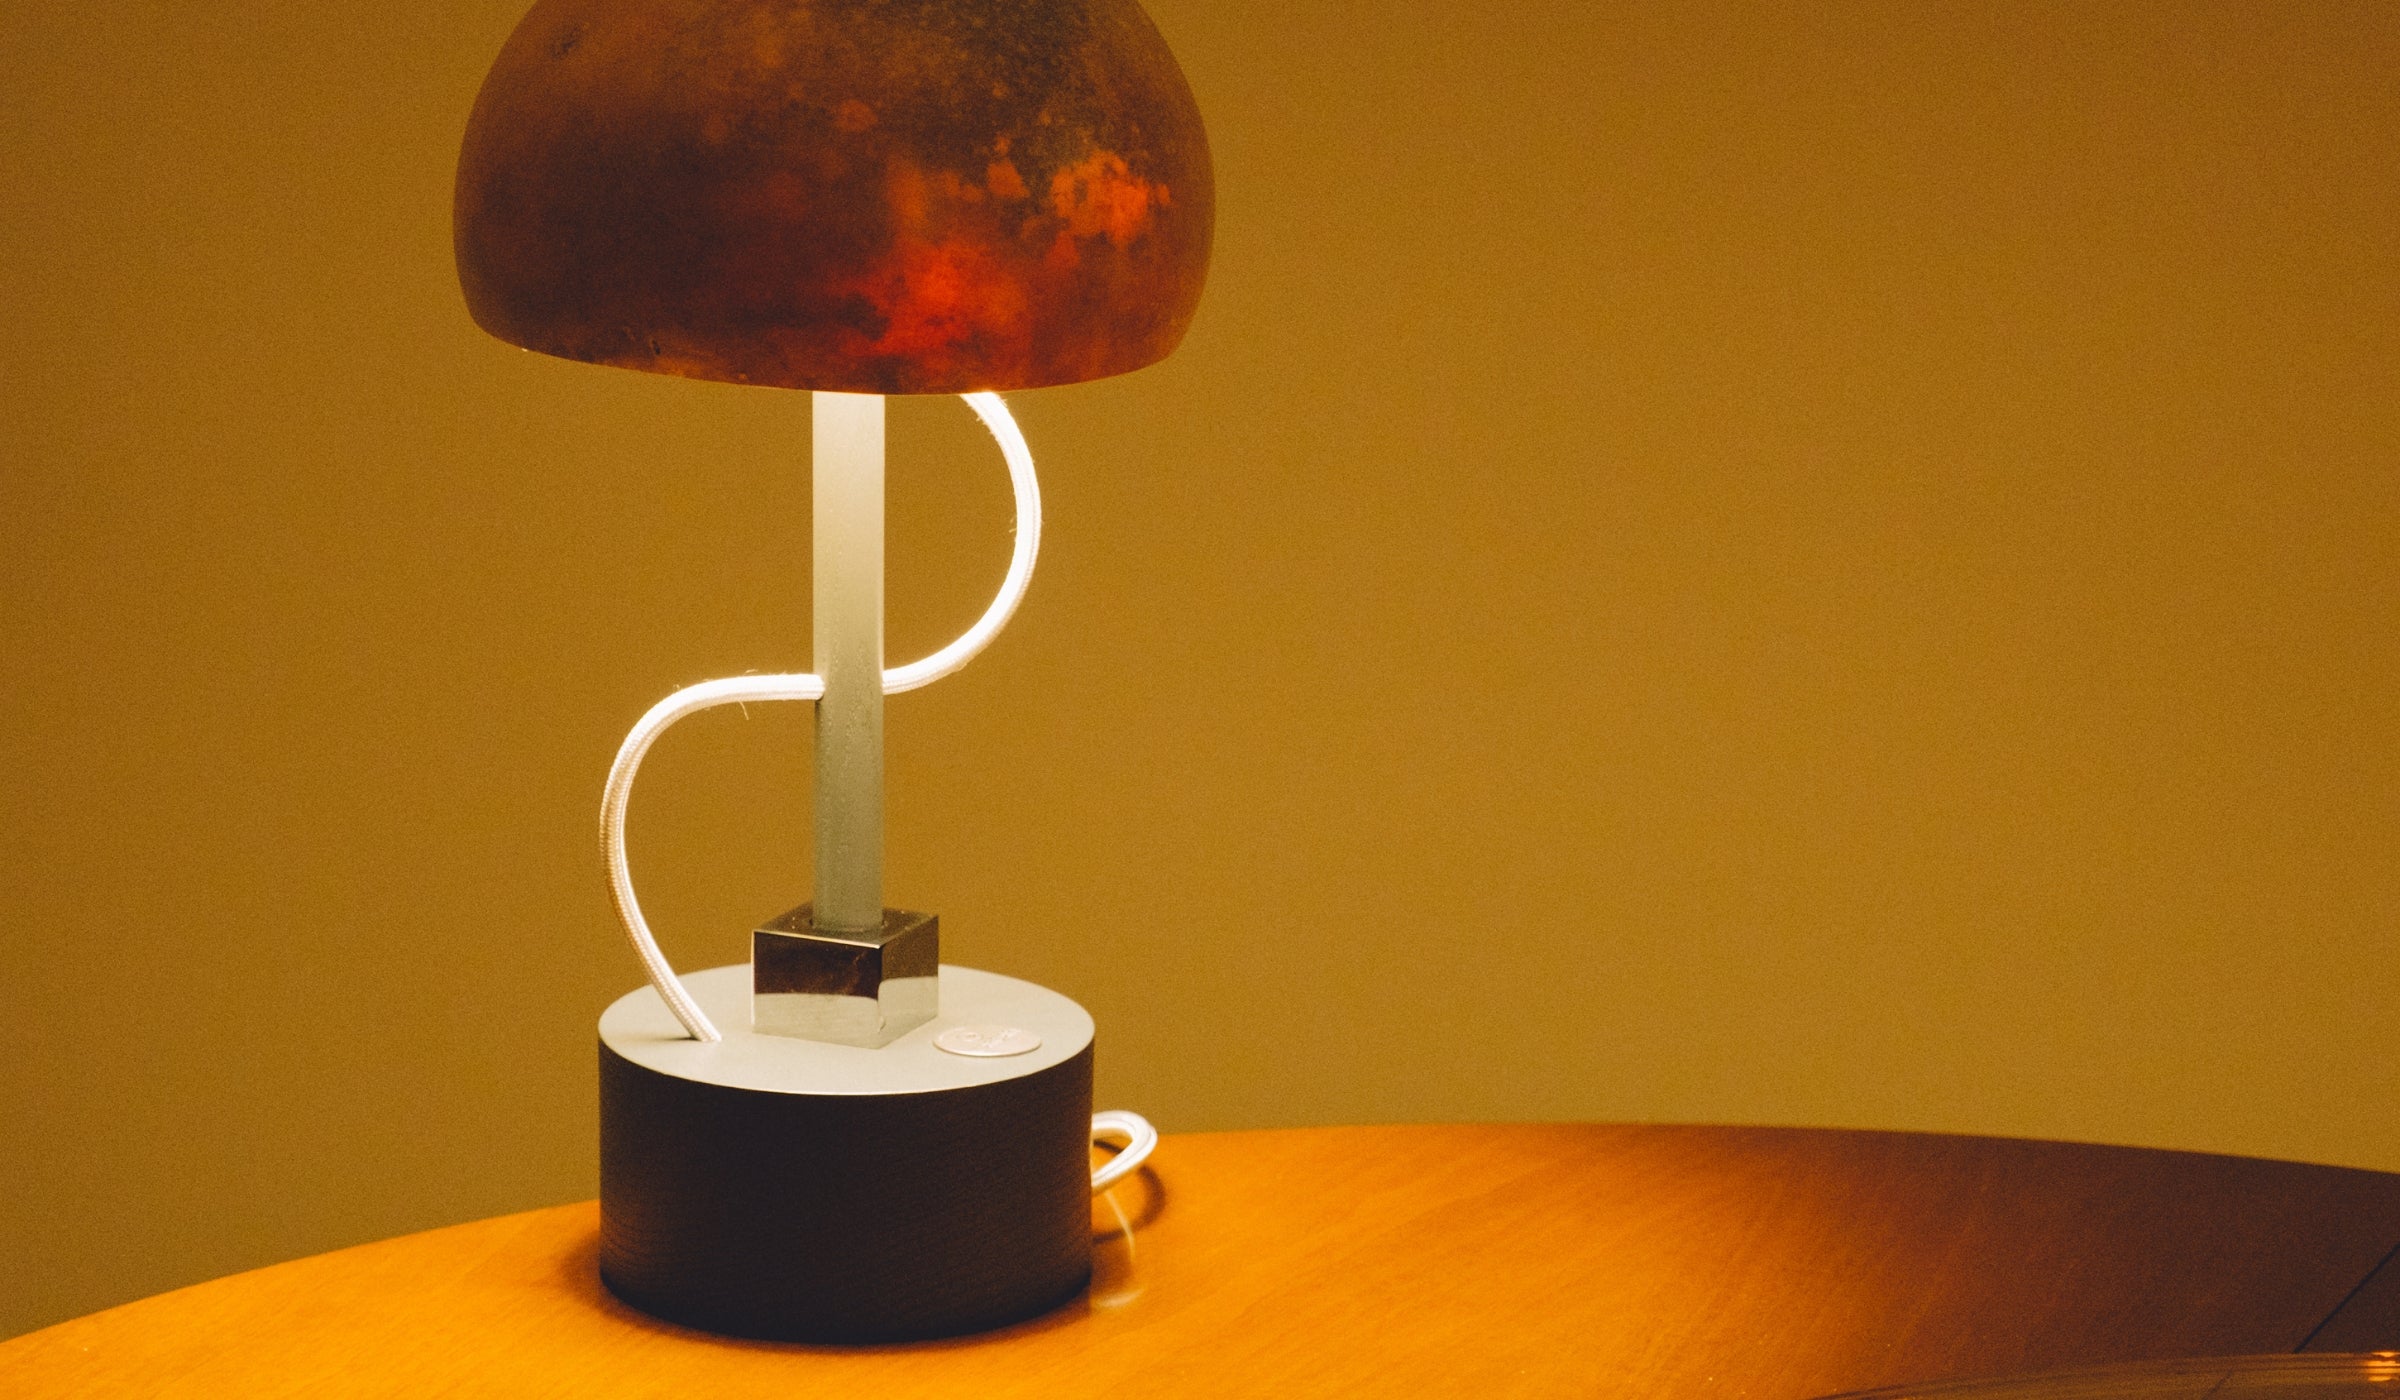 Lampe de table-Déra - Lampe de table en citrouille sèche, finition frêne noir et chrome--NOVINEA-MARGART